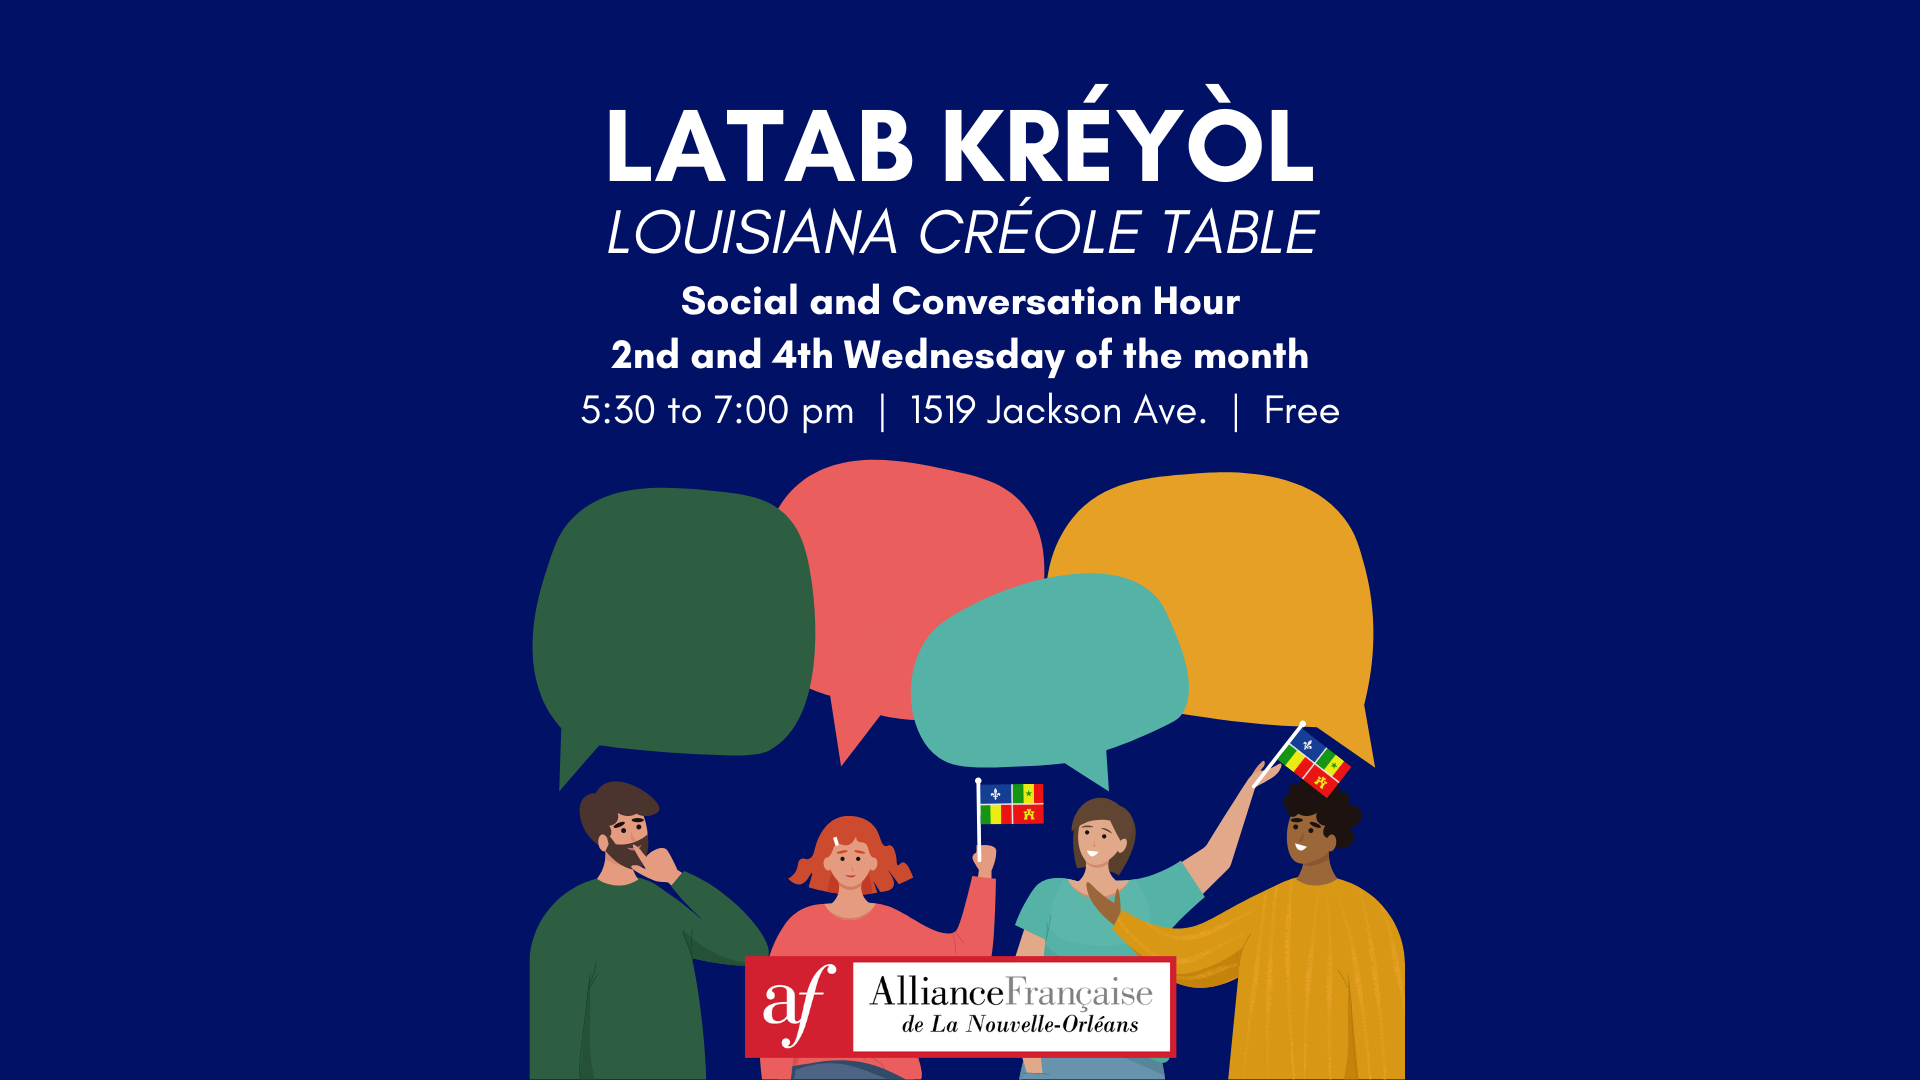 Louisiana Créole Table